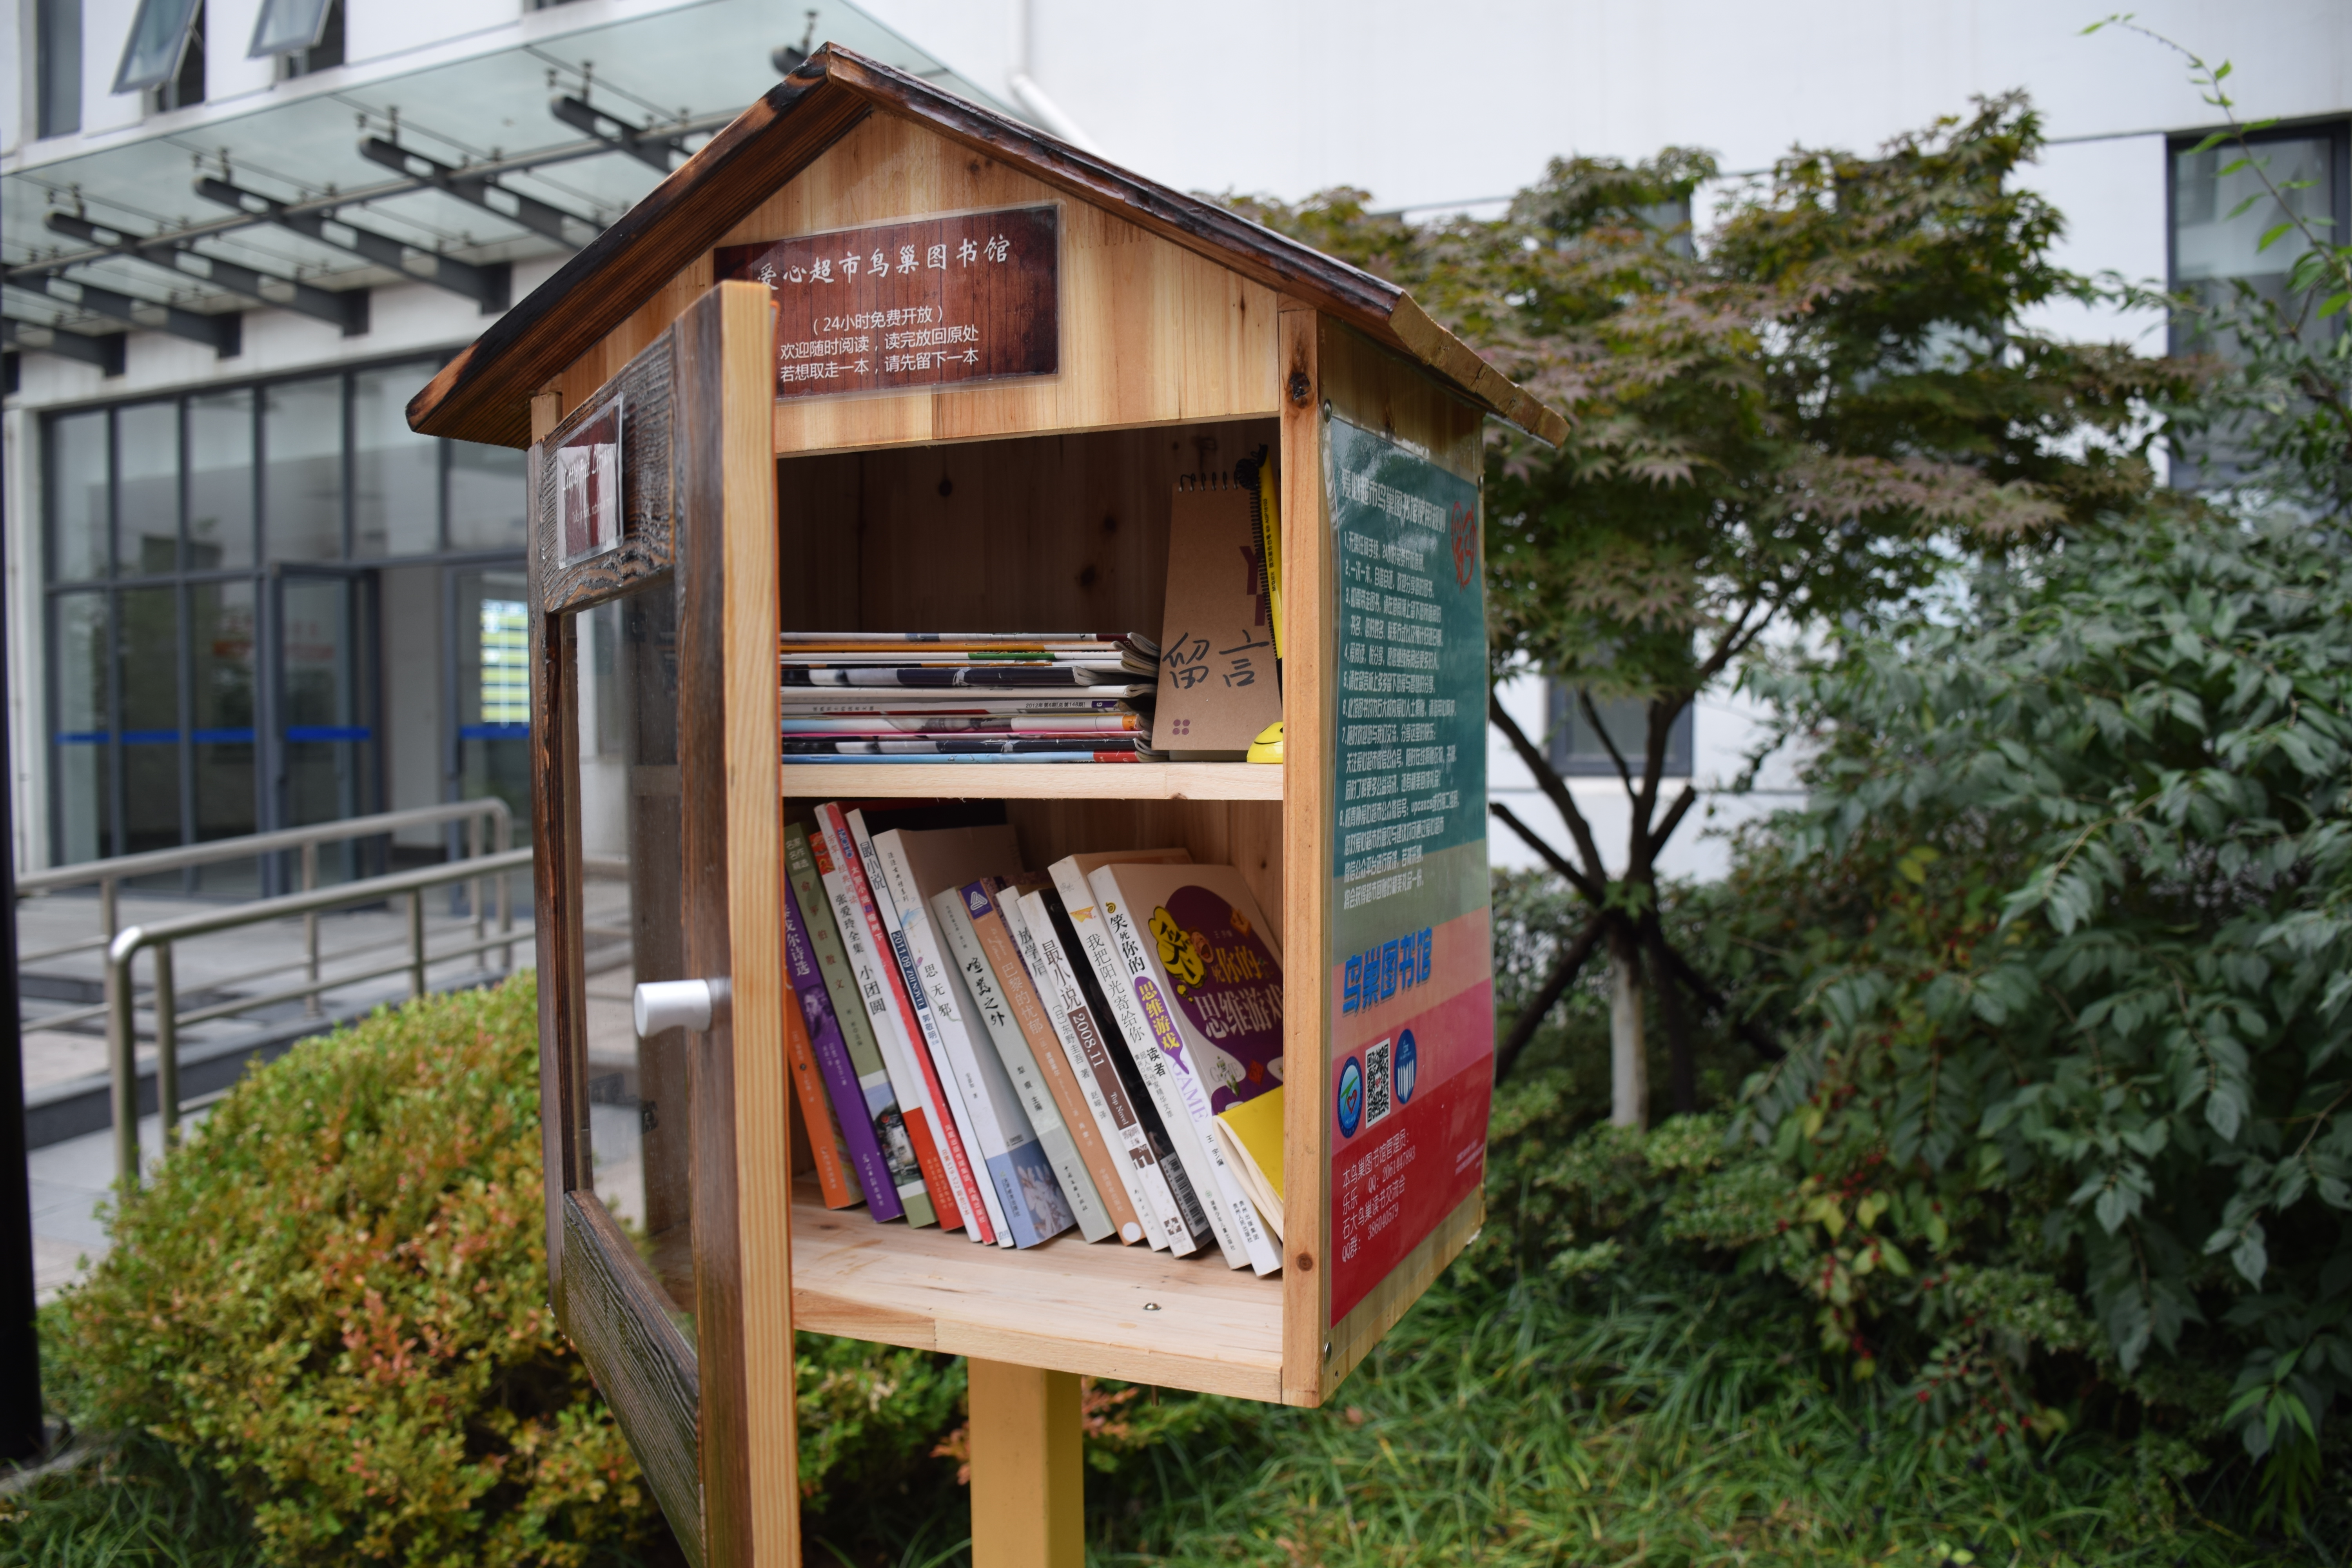 魏珊摄影【本站讯】日前,一个外形酷似鸟巢的微型木质书屋成为石大南